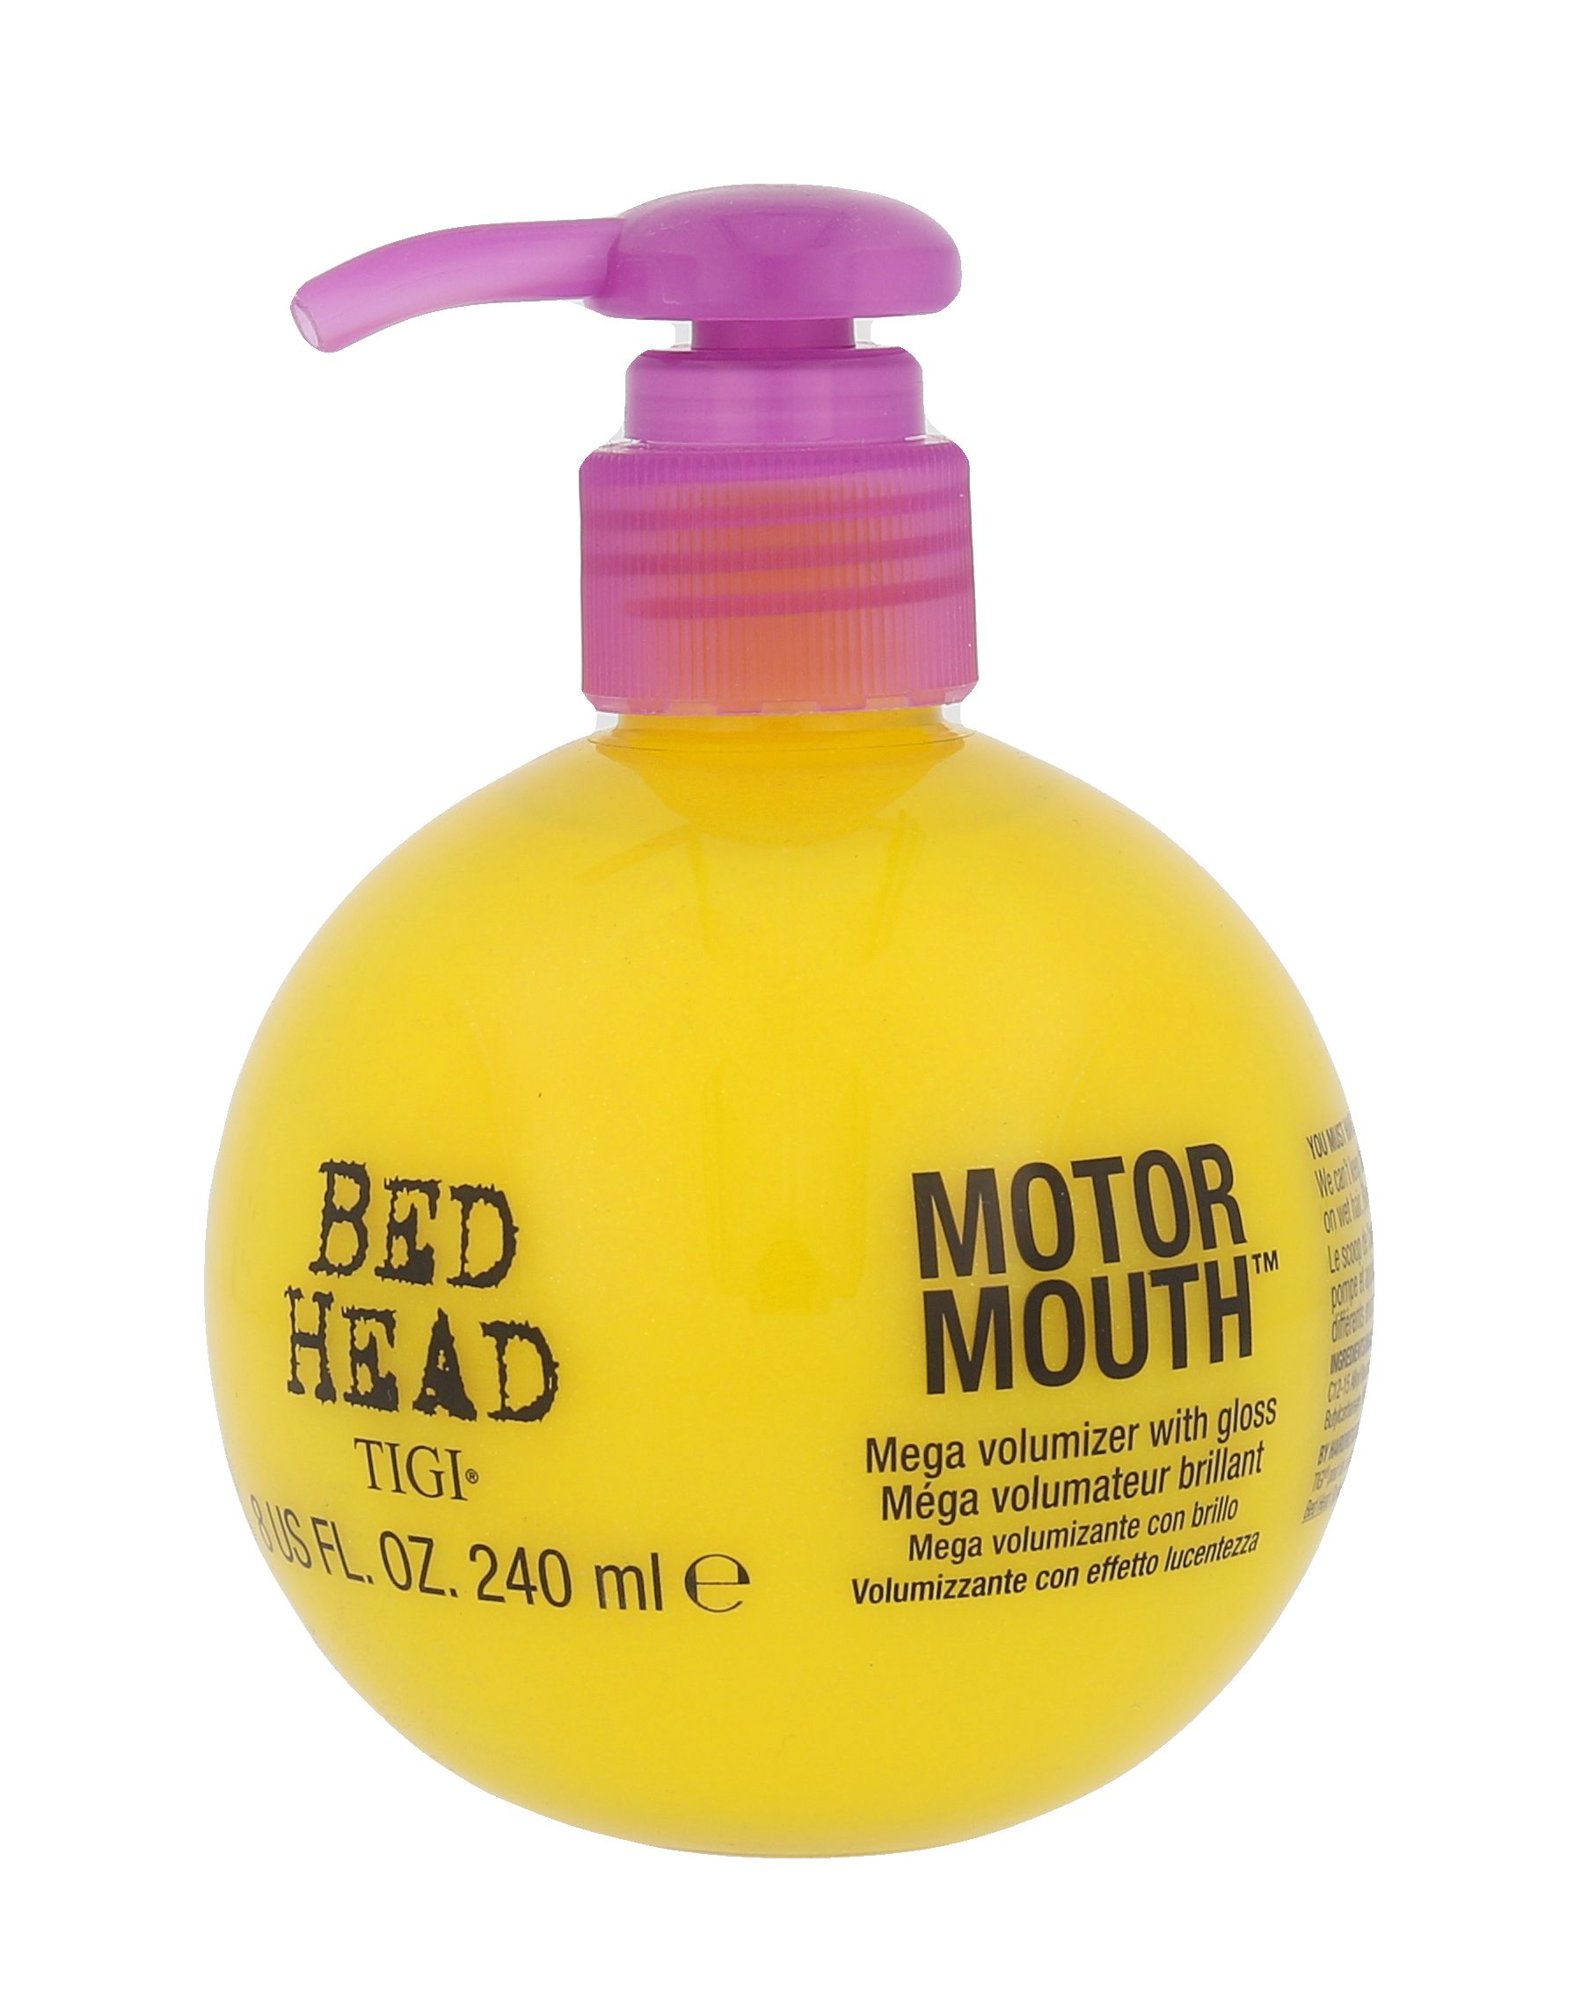 Tigi Bed Head Motor Mouth priemonė plaukų apimčiai